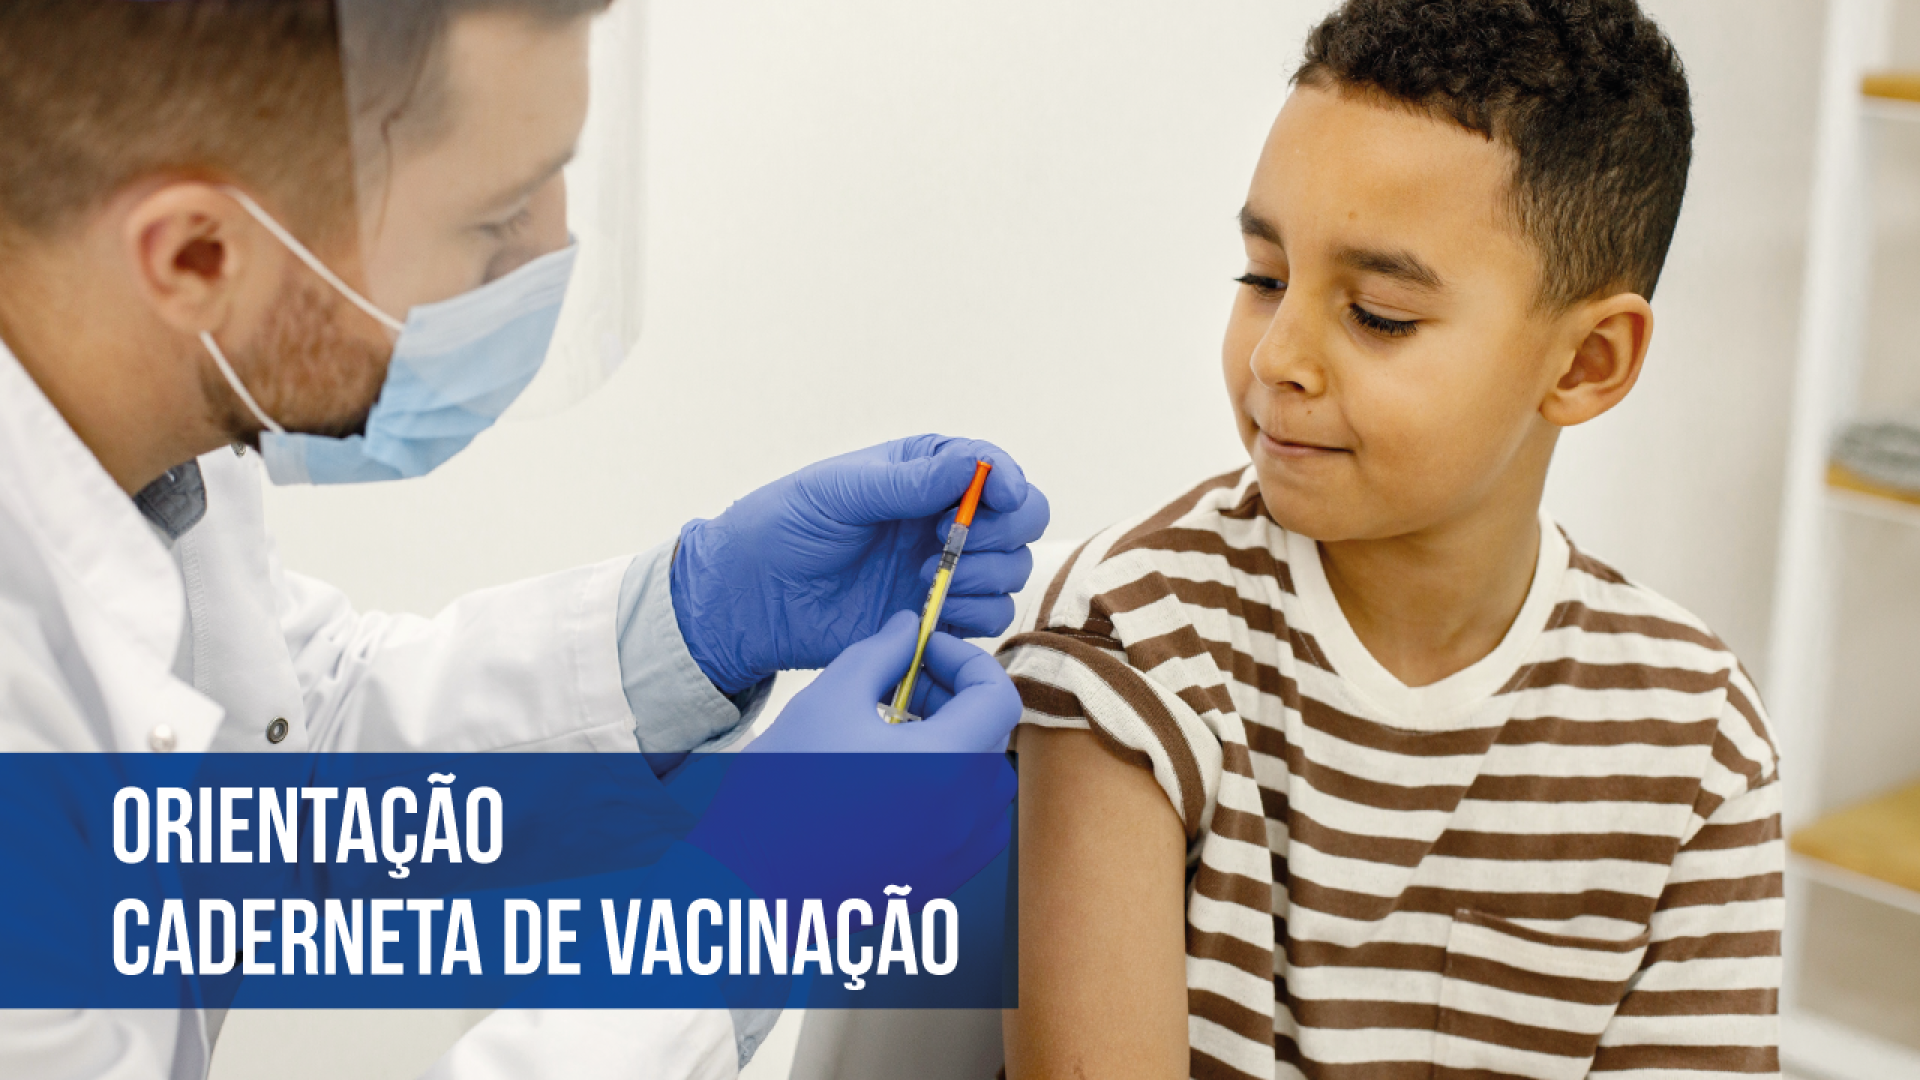 Banner com a imagem de um profissional da saúde segurando uma seringa e um menino. Sobre a imagem, o texto “Orientação - Caderneta de vacinação”, em fonte branca e em uma tarja azul. 